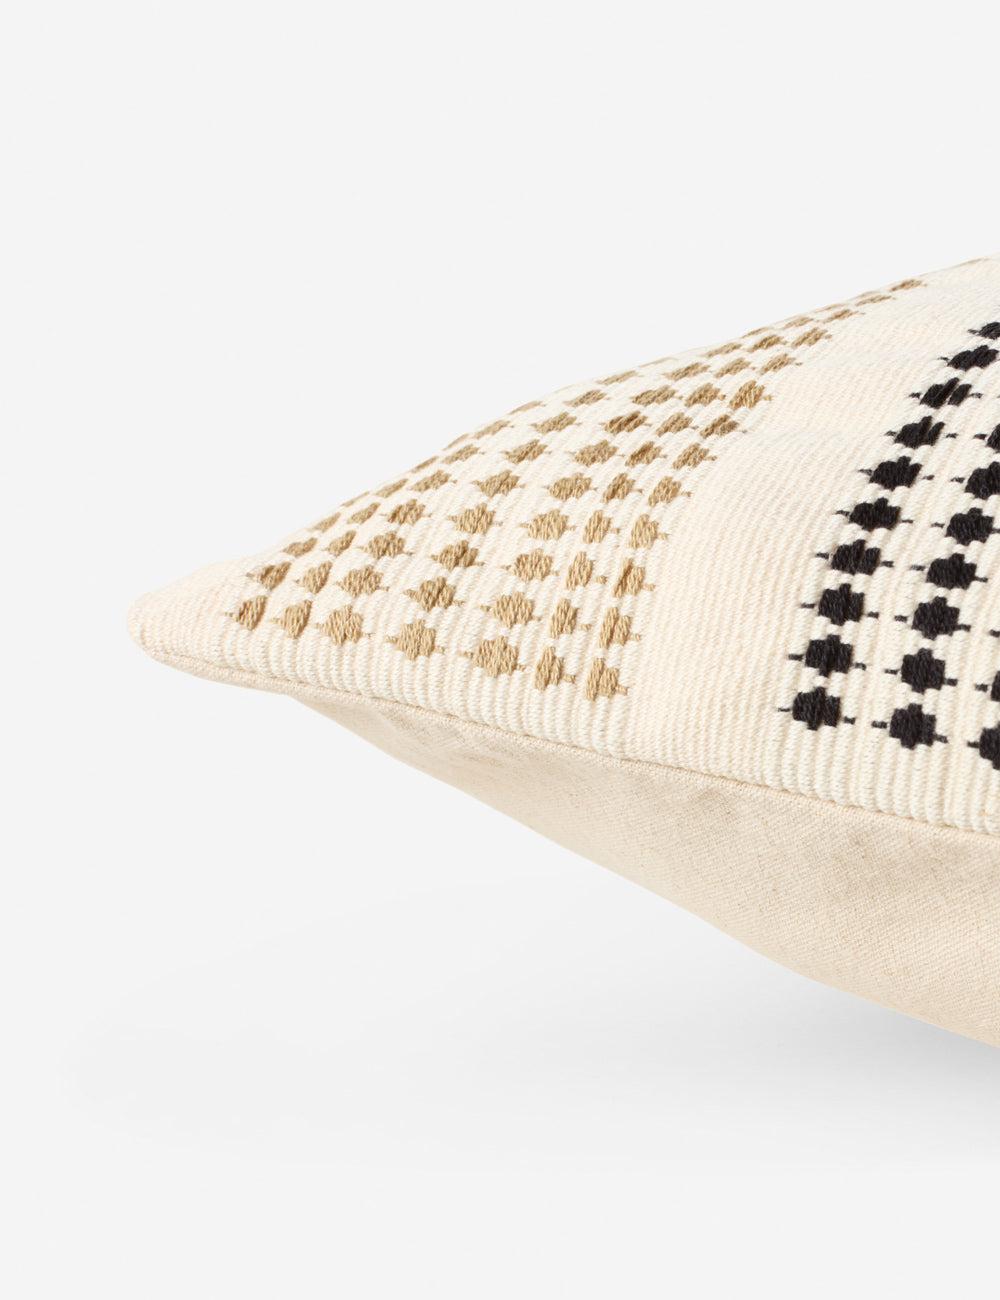 Nagaland Artisan Embroidered Cream Cotton Lumbar Pillow